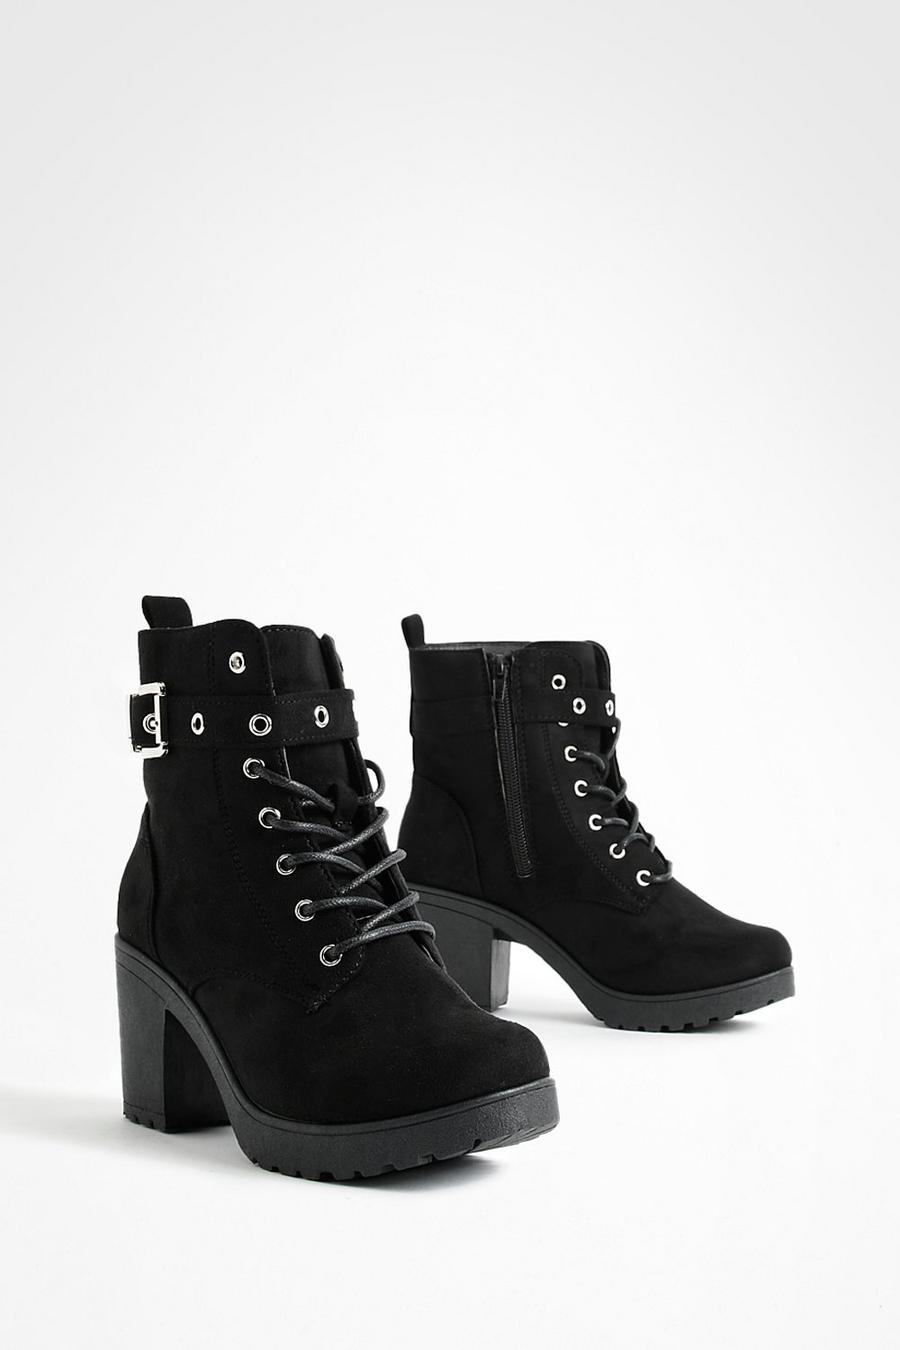 Chaussures de randonnée à lacets montants - Pointure large, Noir black